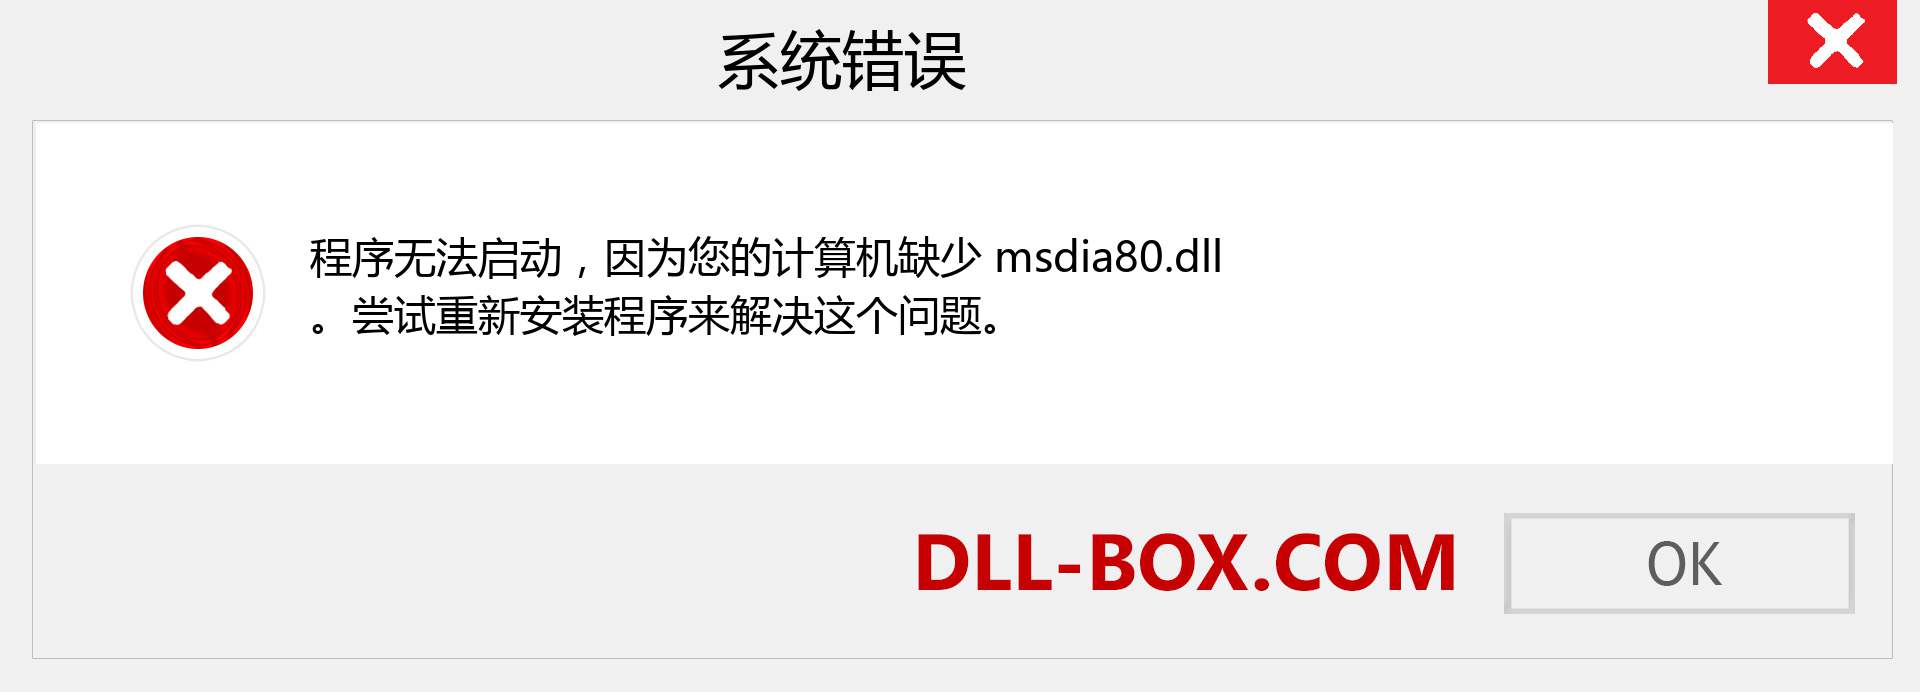 msdia80.dll 文件丢失？。 适用于 Windows 7、8、10 的下载 - 修复 Windows、照片、图像上的 msdia80 dll 丢失错误